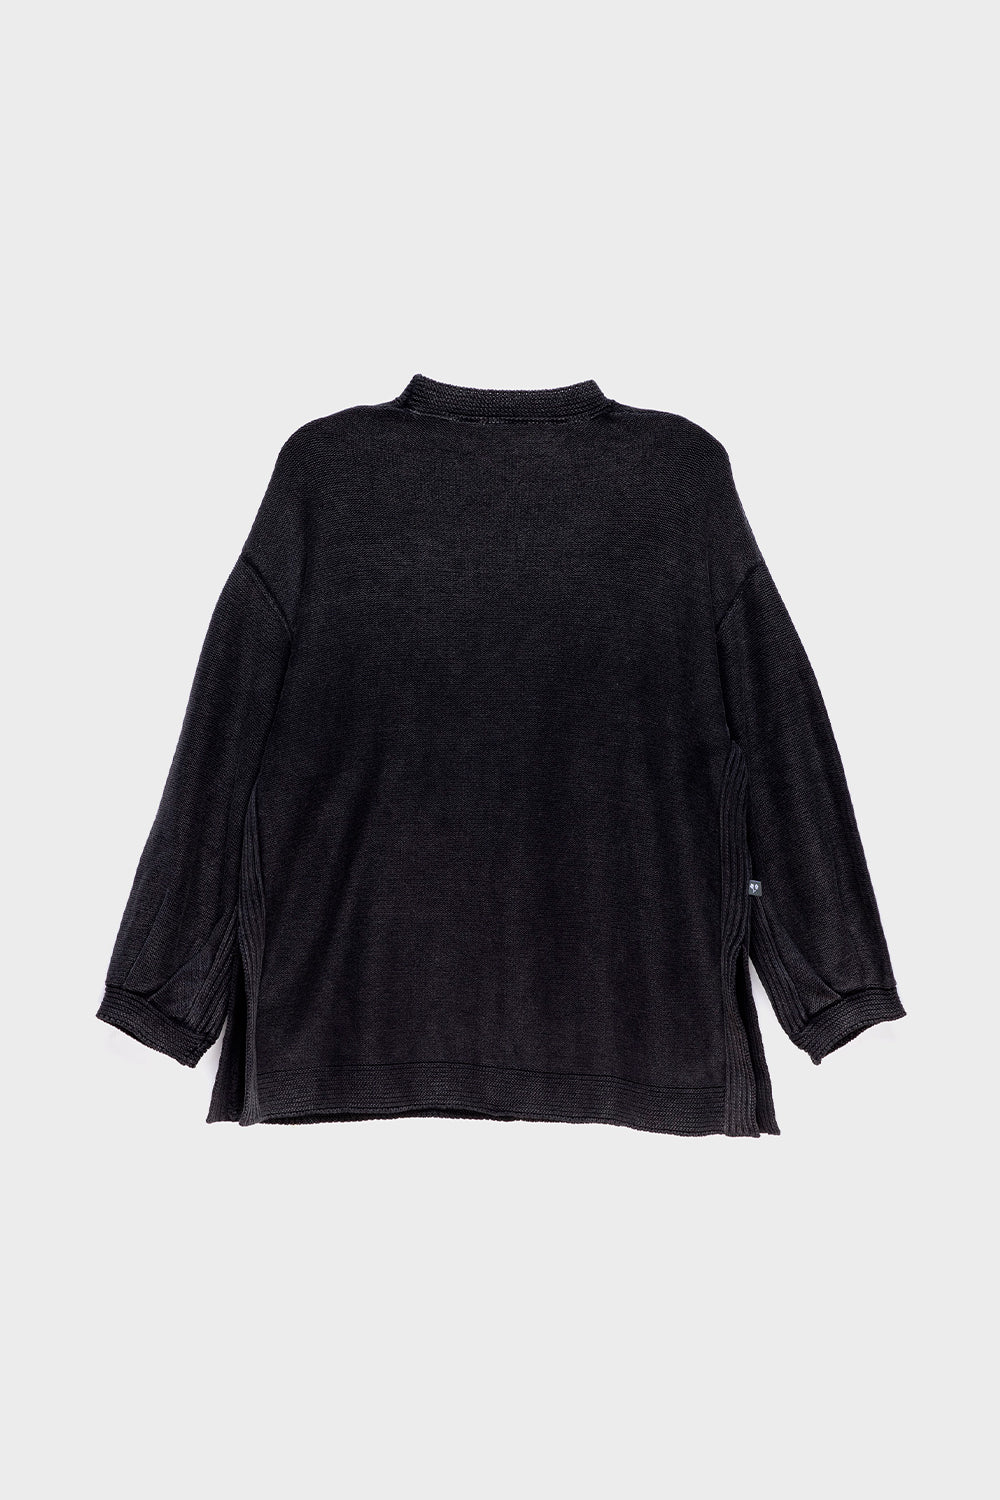 Sweater Noir Orgánico Negro Mujer